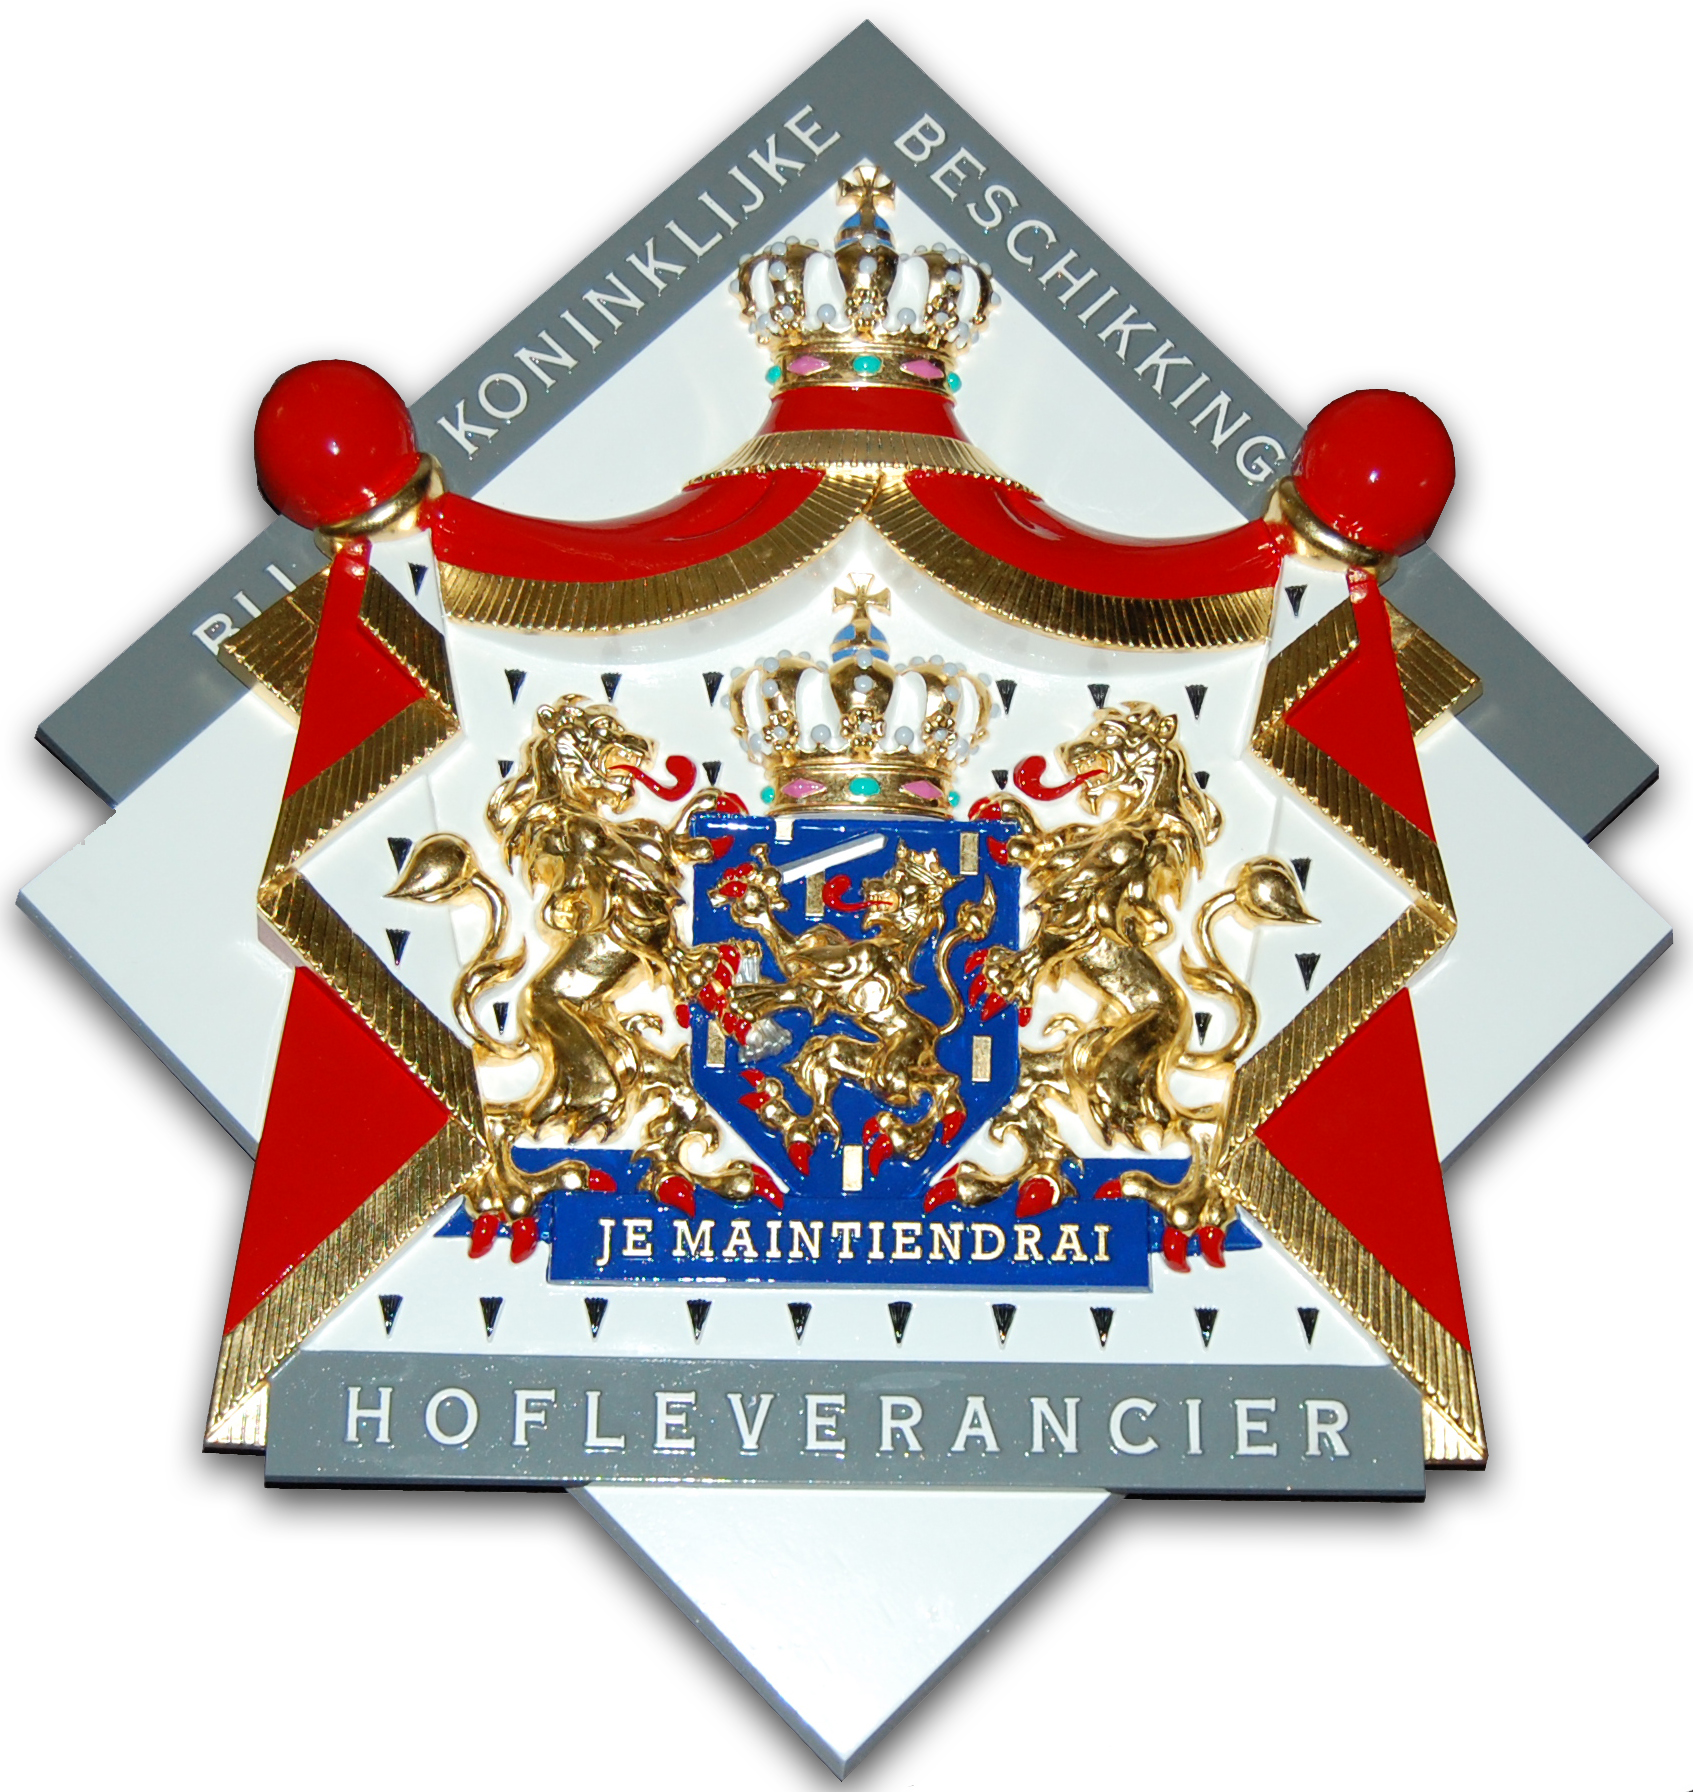 hofleverancier logo